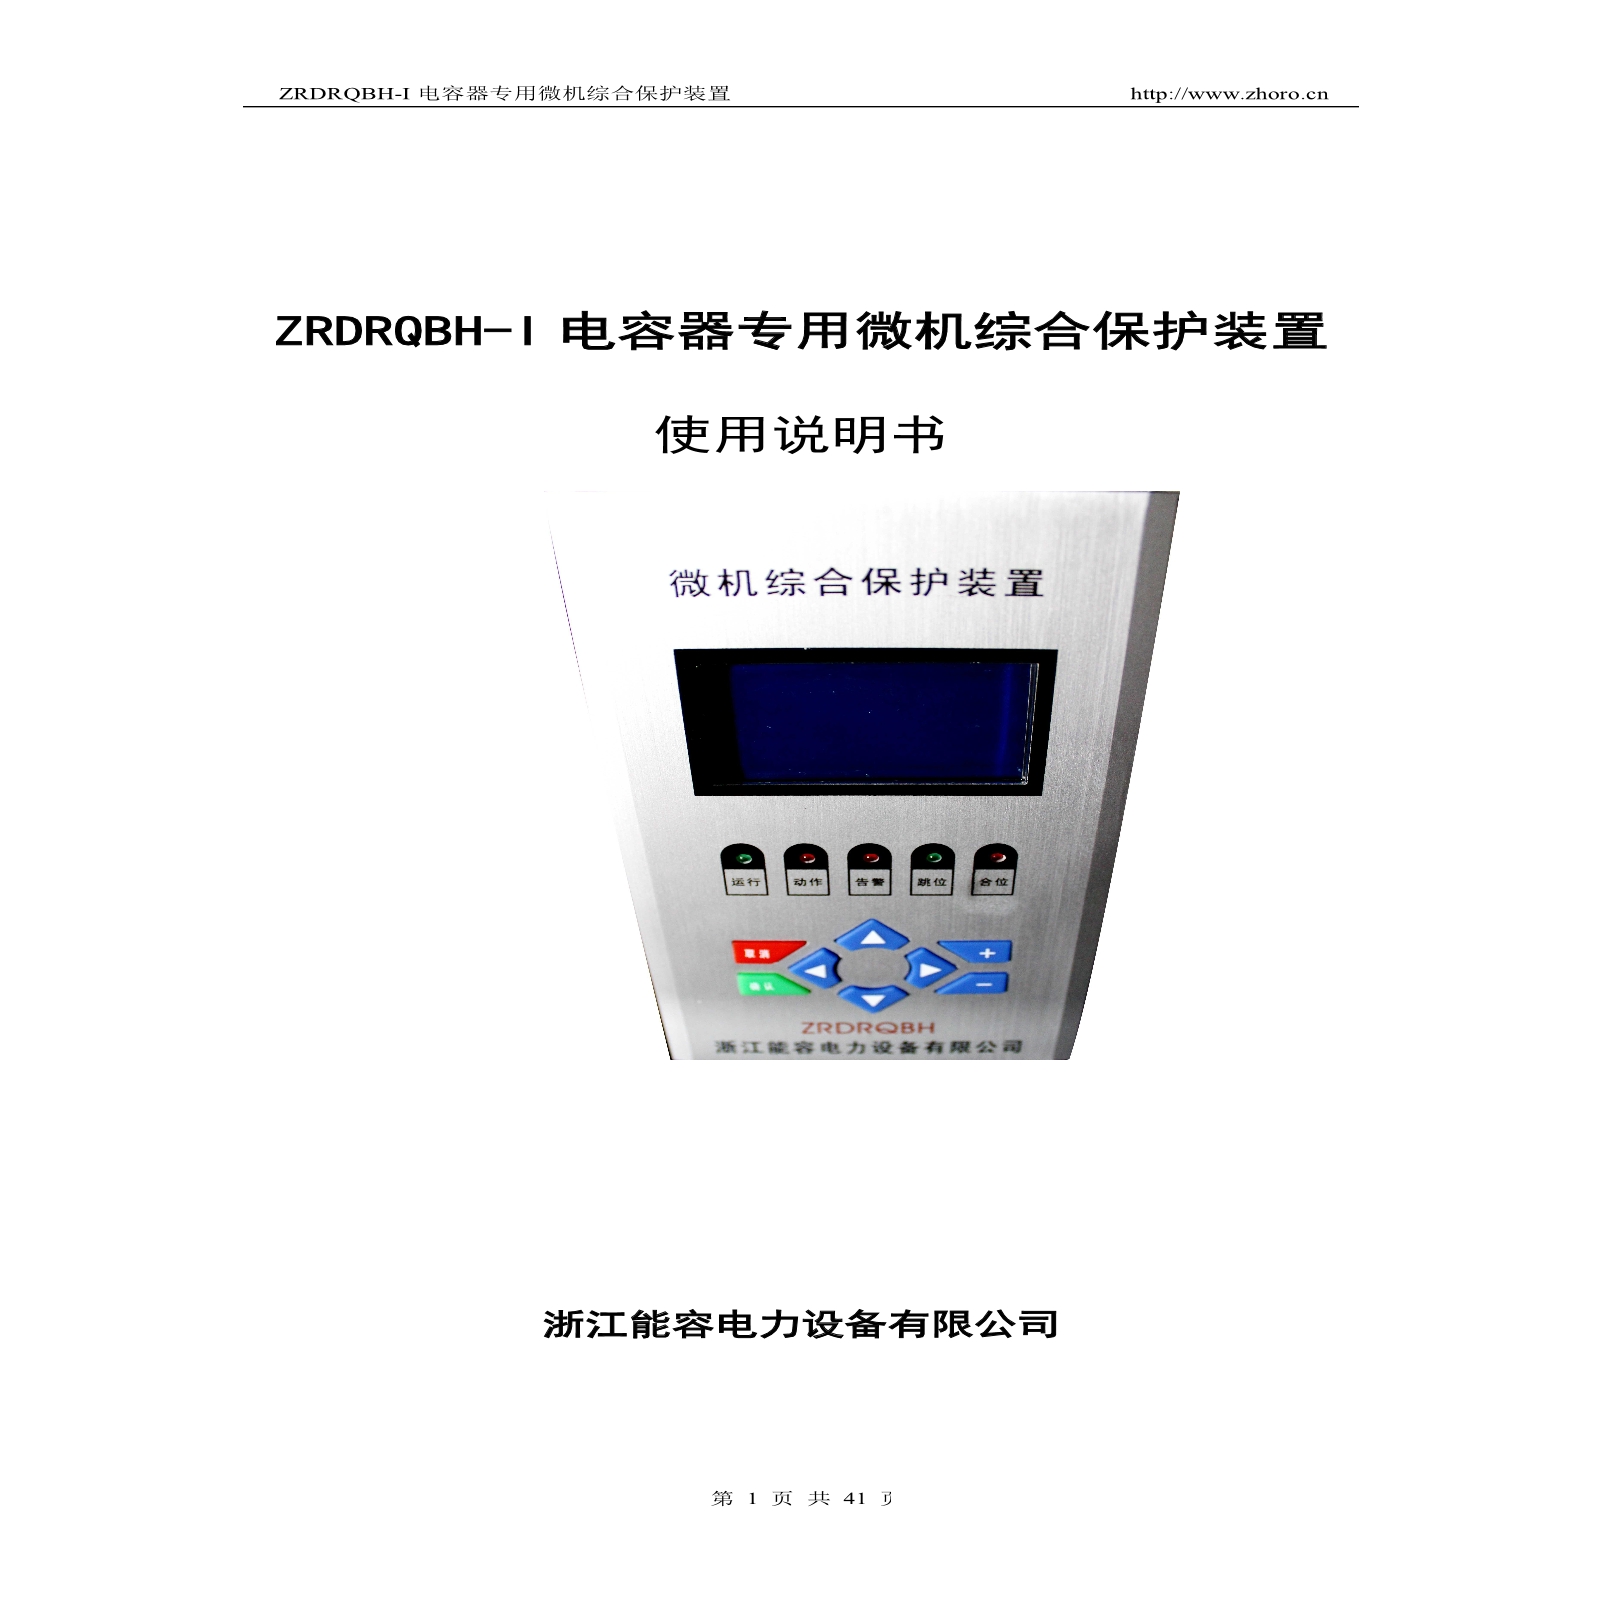 ZRDRQBH-I电容器专用微机综合保护装置